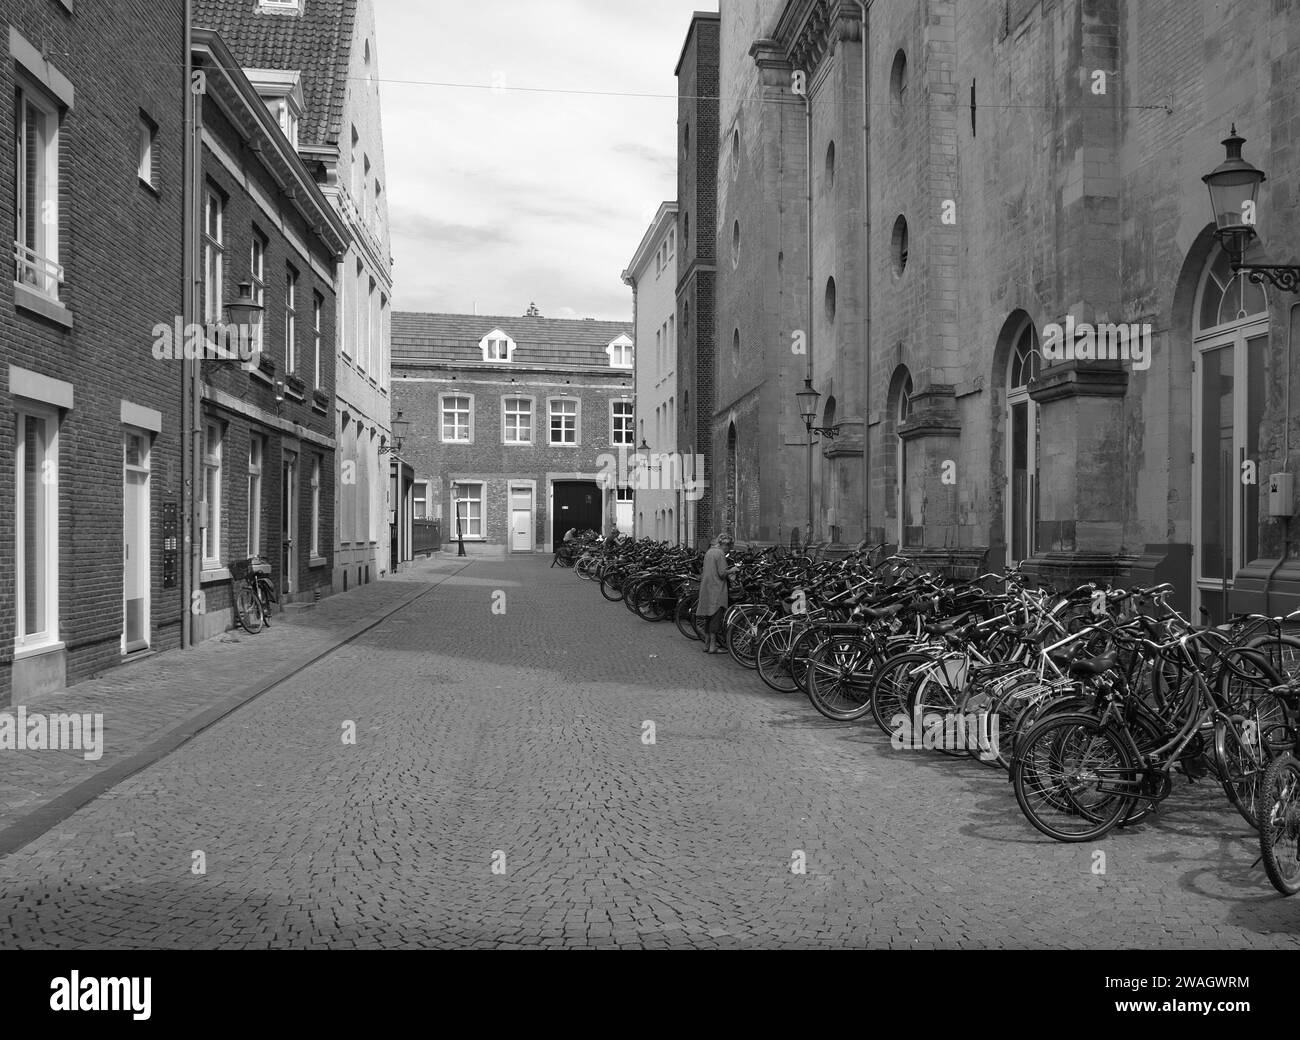 Maastricht, das niederländische Stadtzentrum mit alten historischen Gebäuden, Geschäften, Geschäften mit geparkten Fahrrädern in einer Reihe auf einer Kopfsteinpflasterstraße in Schwarzweiß Stockfoto